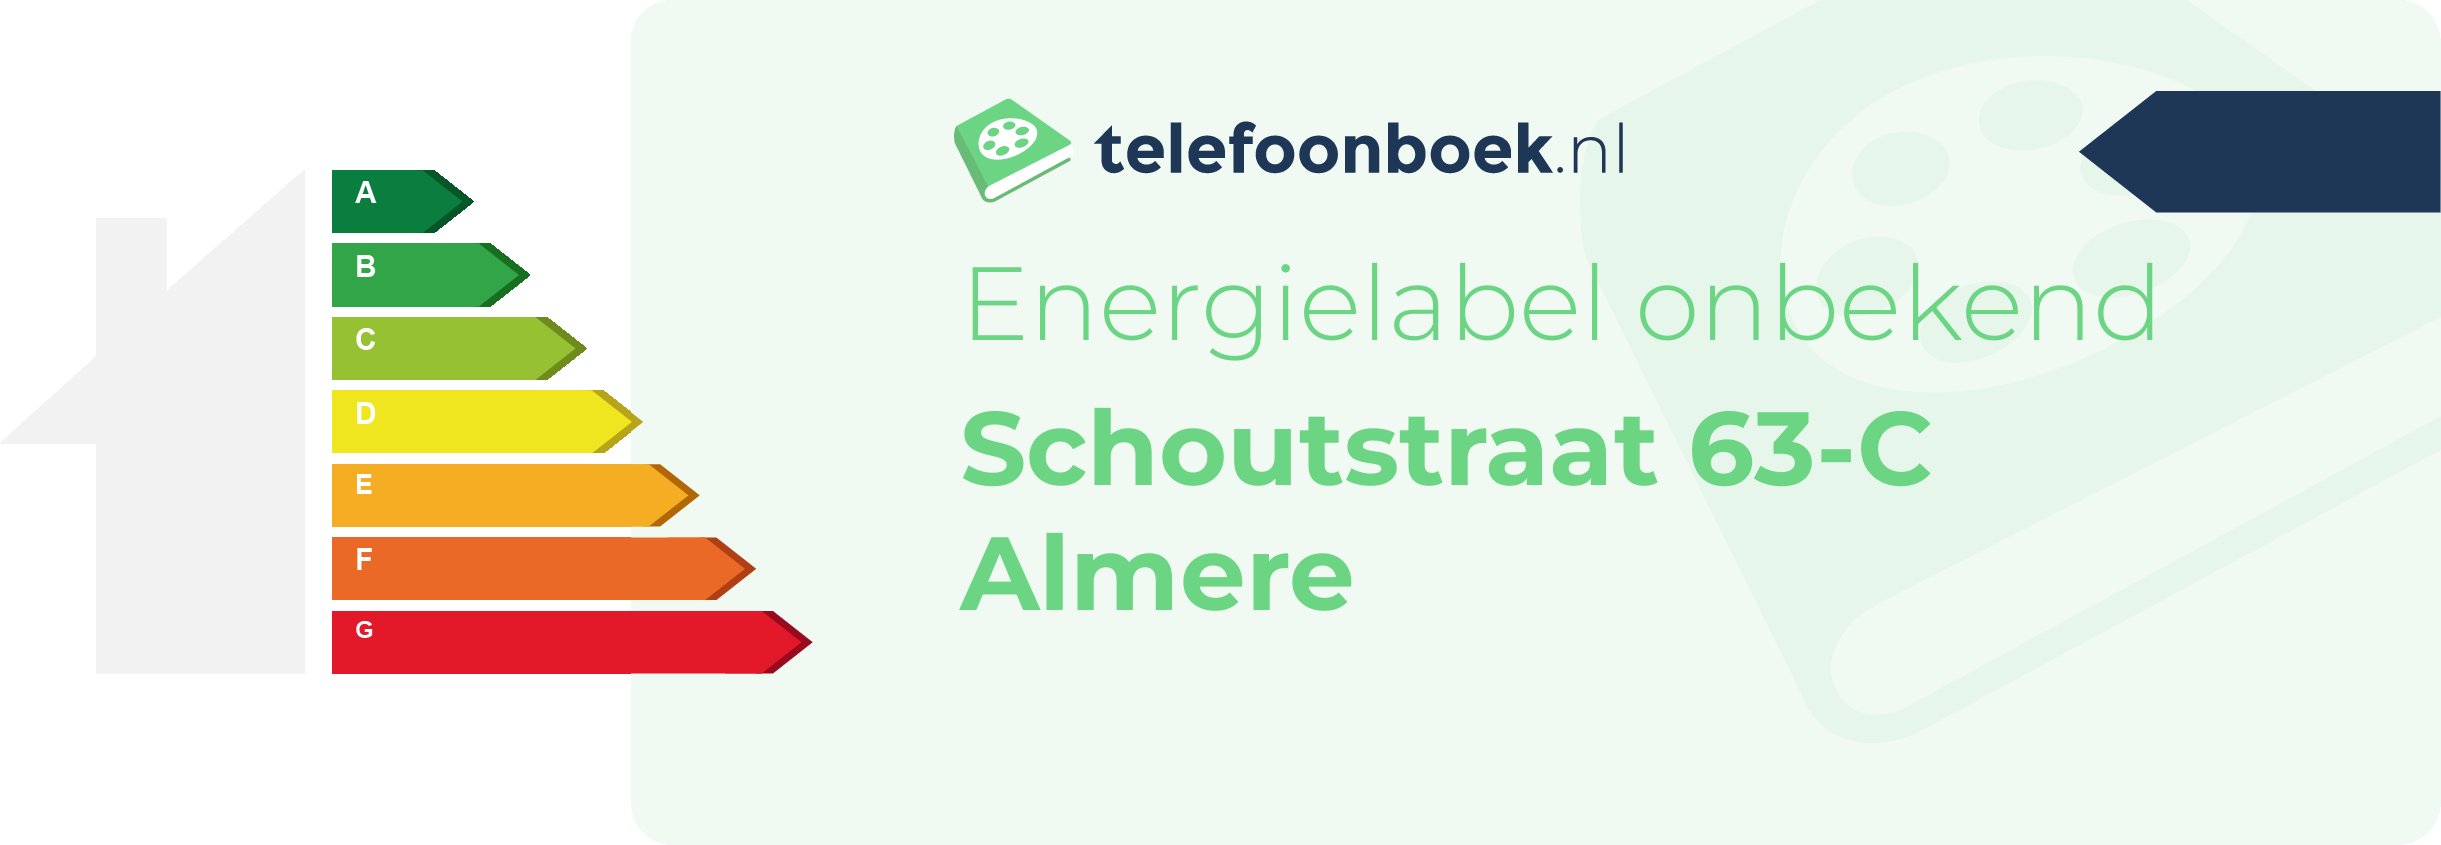 Energielabel Schoutstraat 63-C Almere